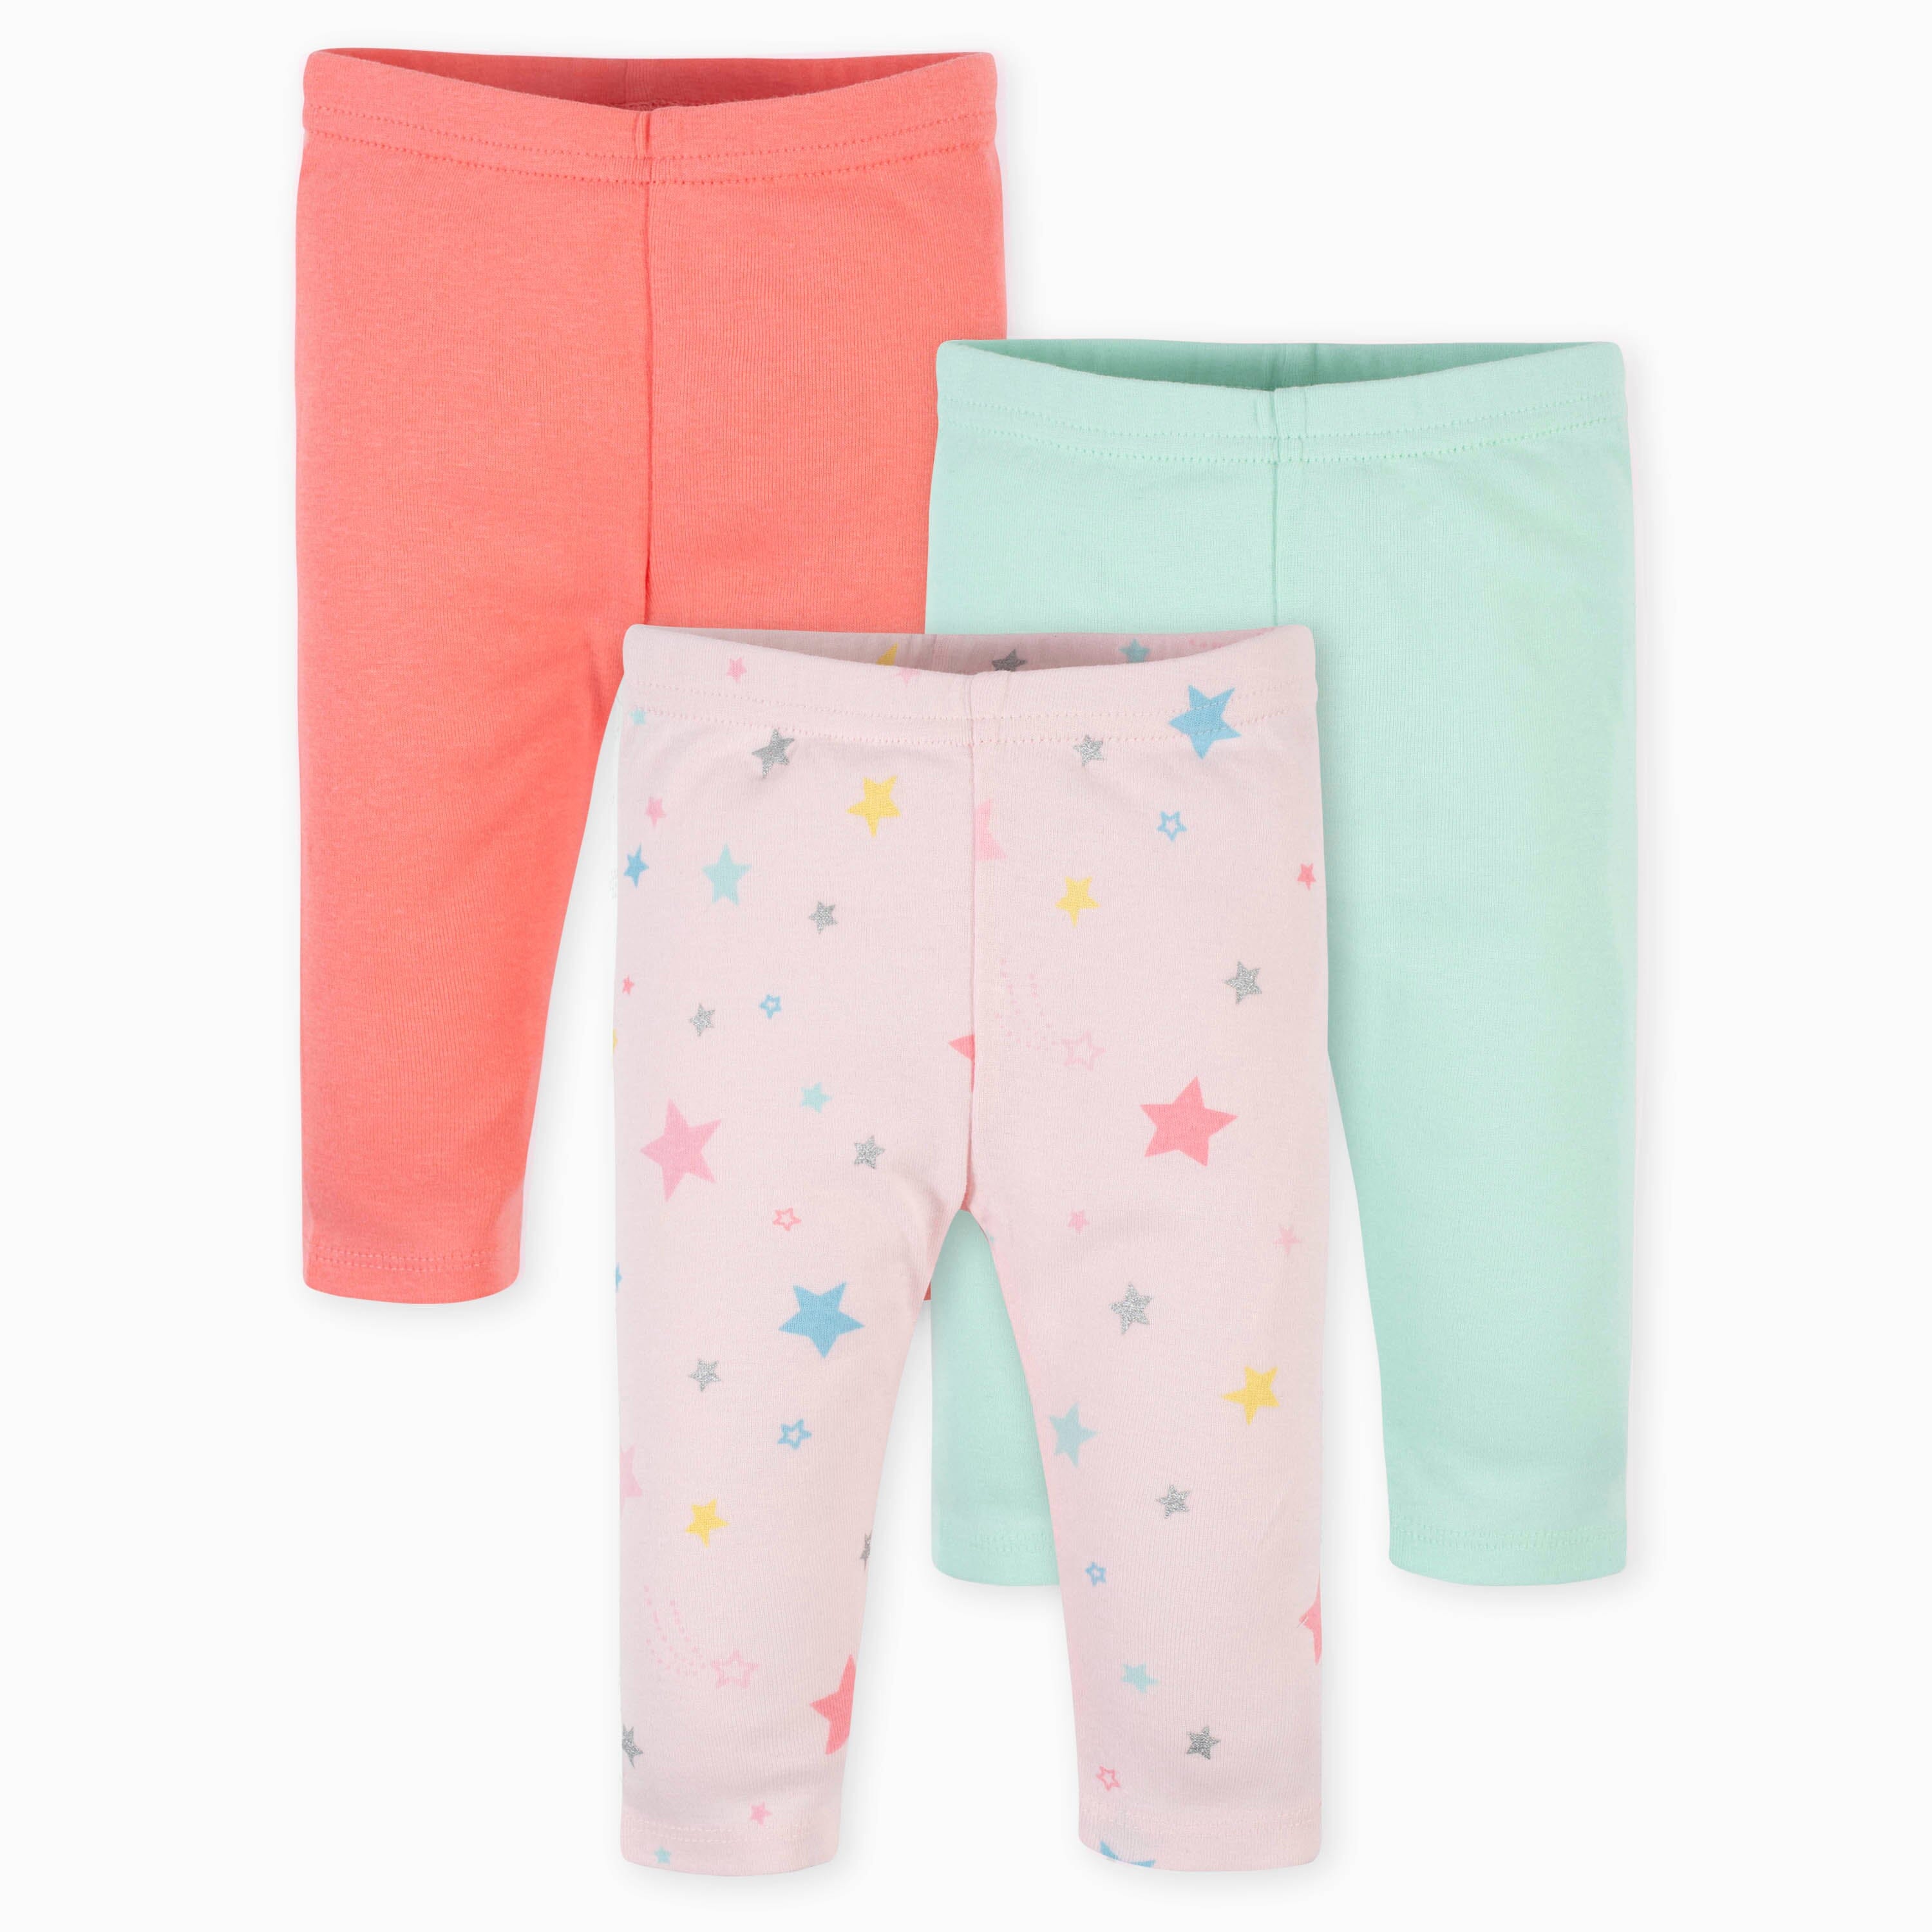 Floral Baby Leggings oeko Tex Certified Baby Clothes Skinny Pants for Baby  Flower Baby Pants Baby Shower Gift Girl Leggings 